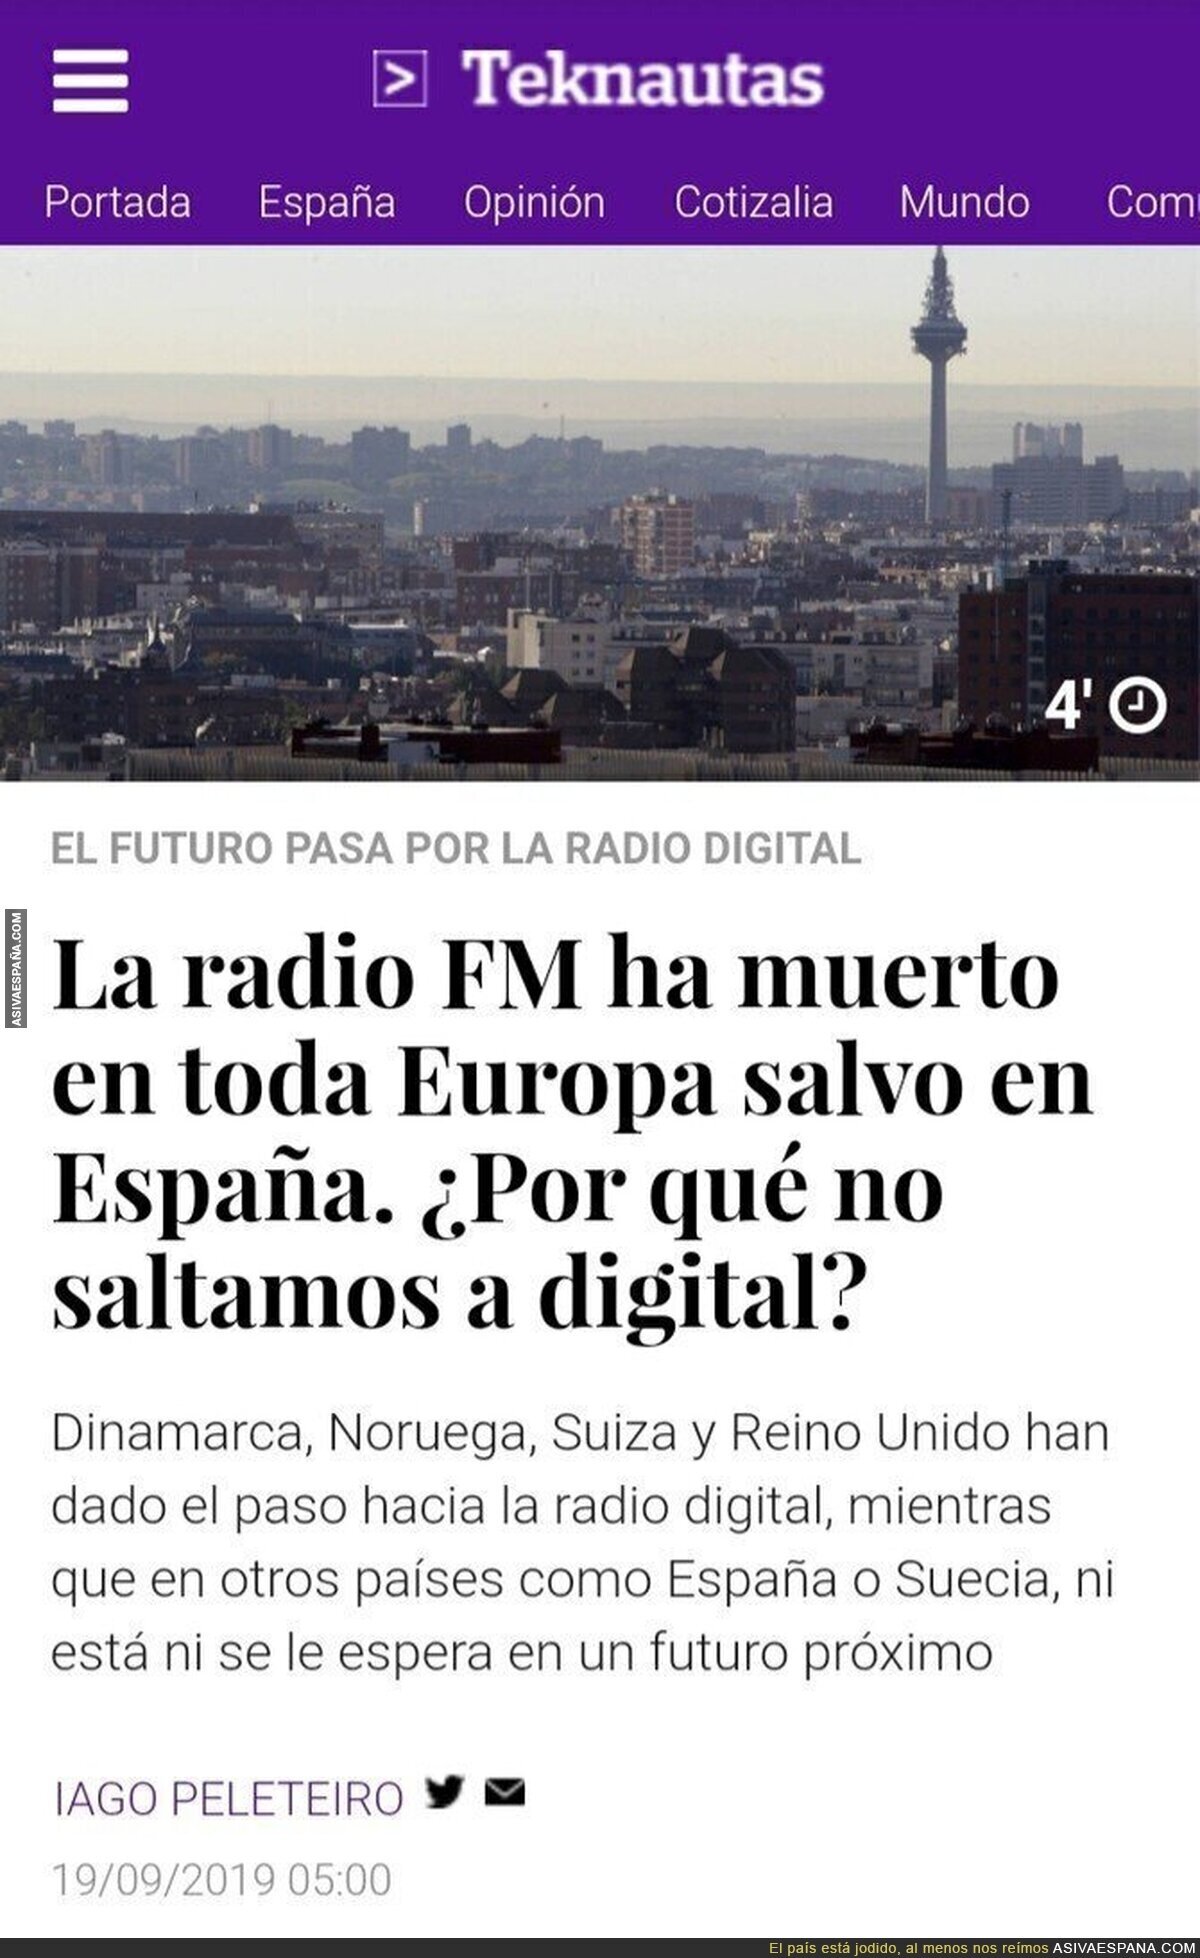 La radio digital ha muerto en Europa, menos en España